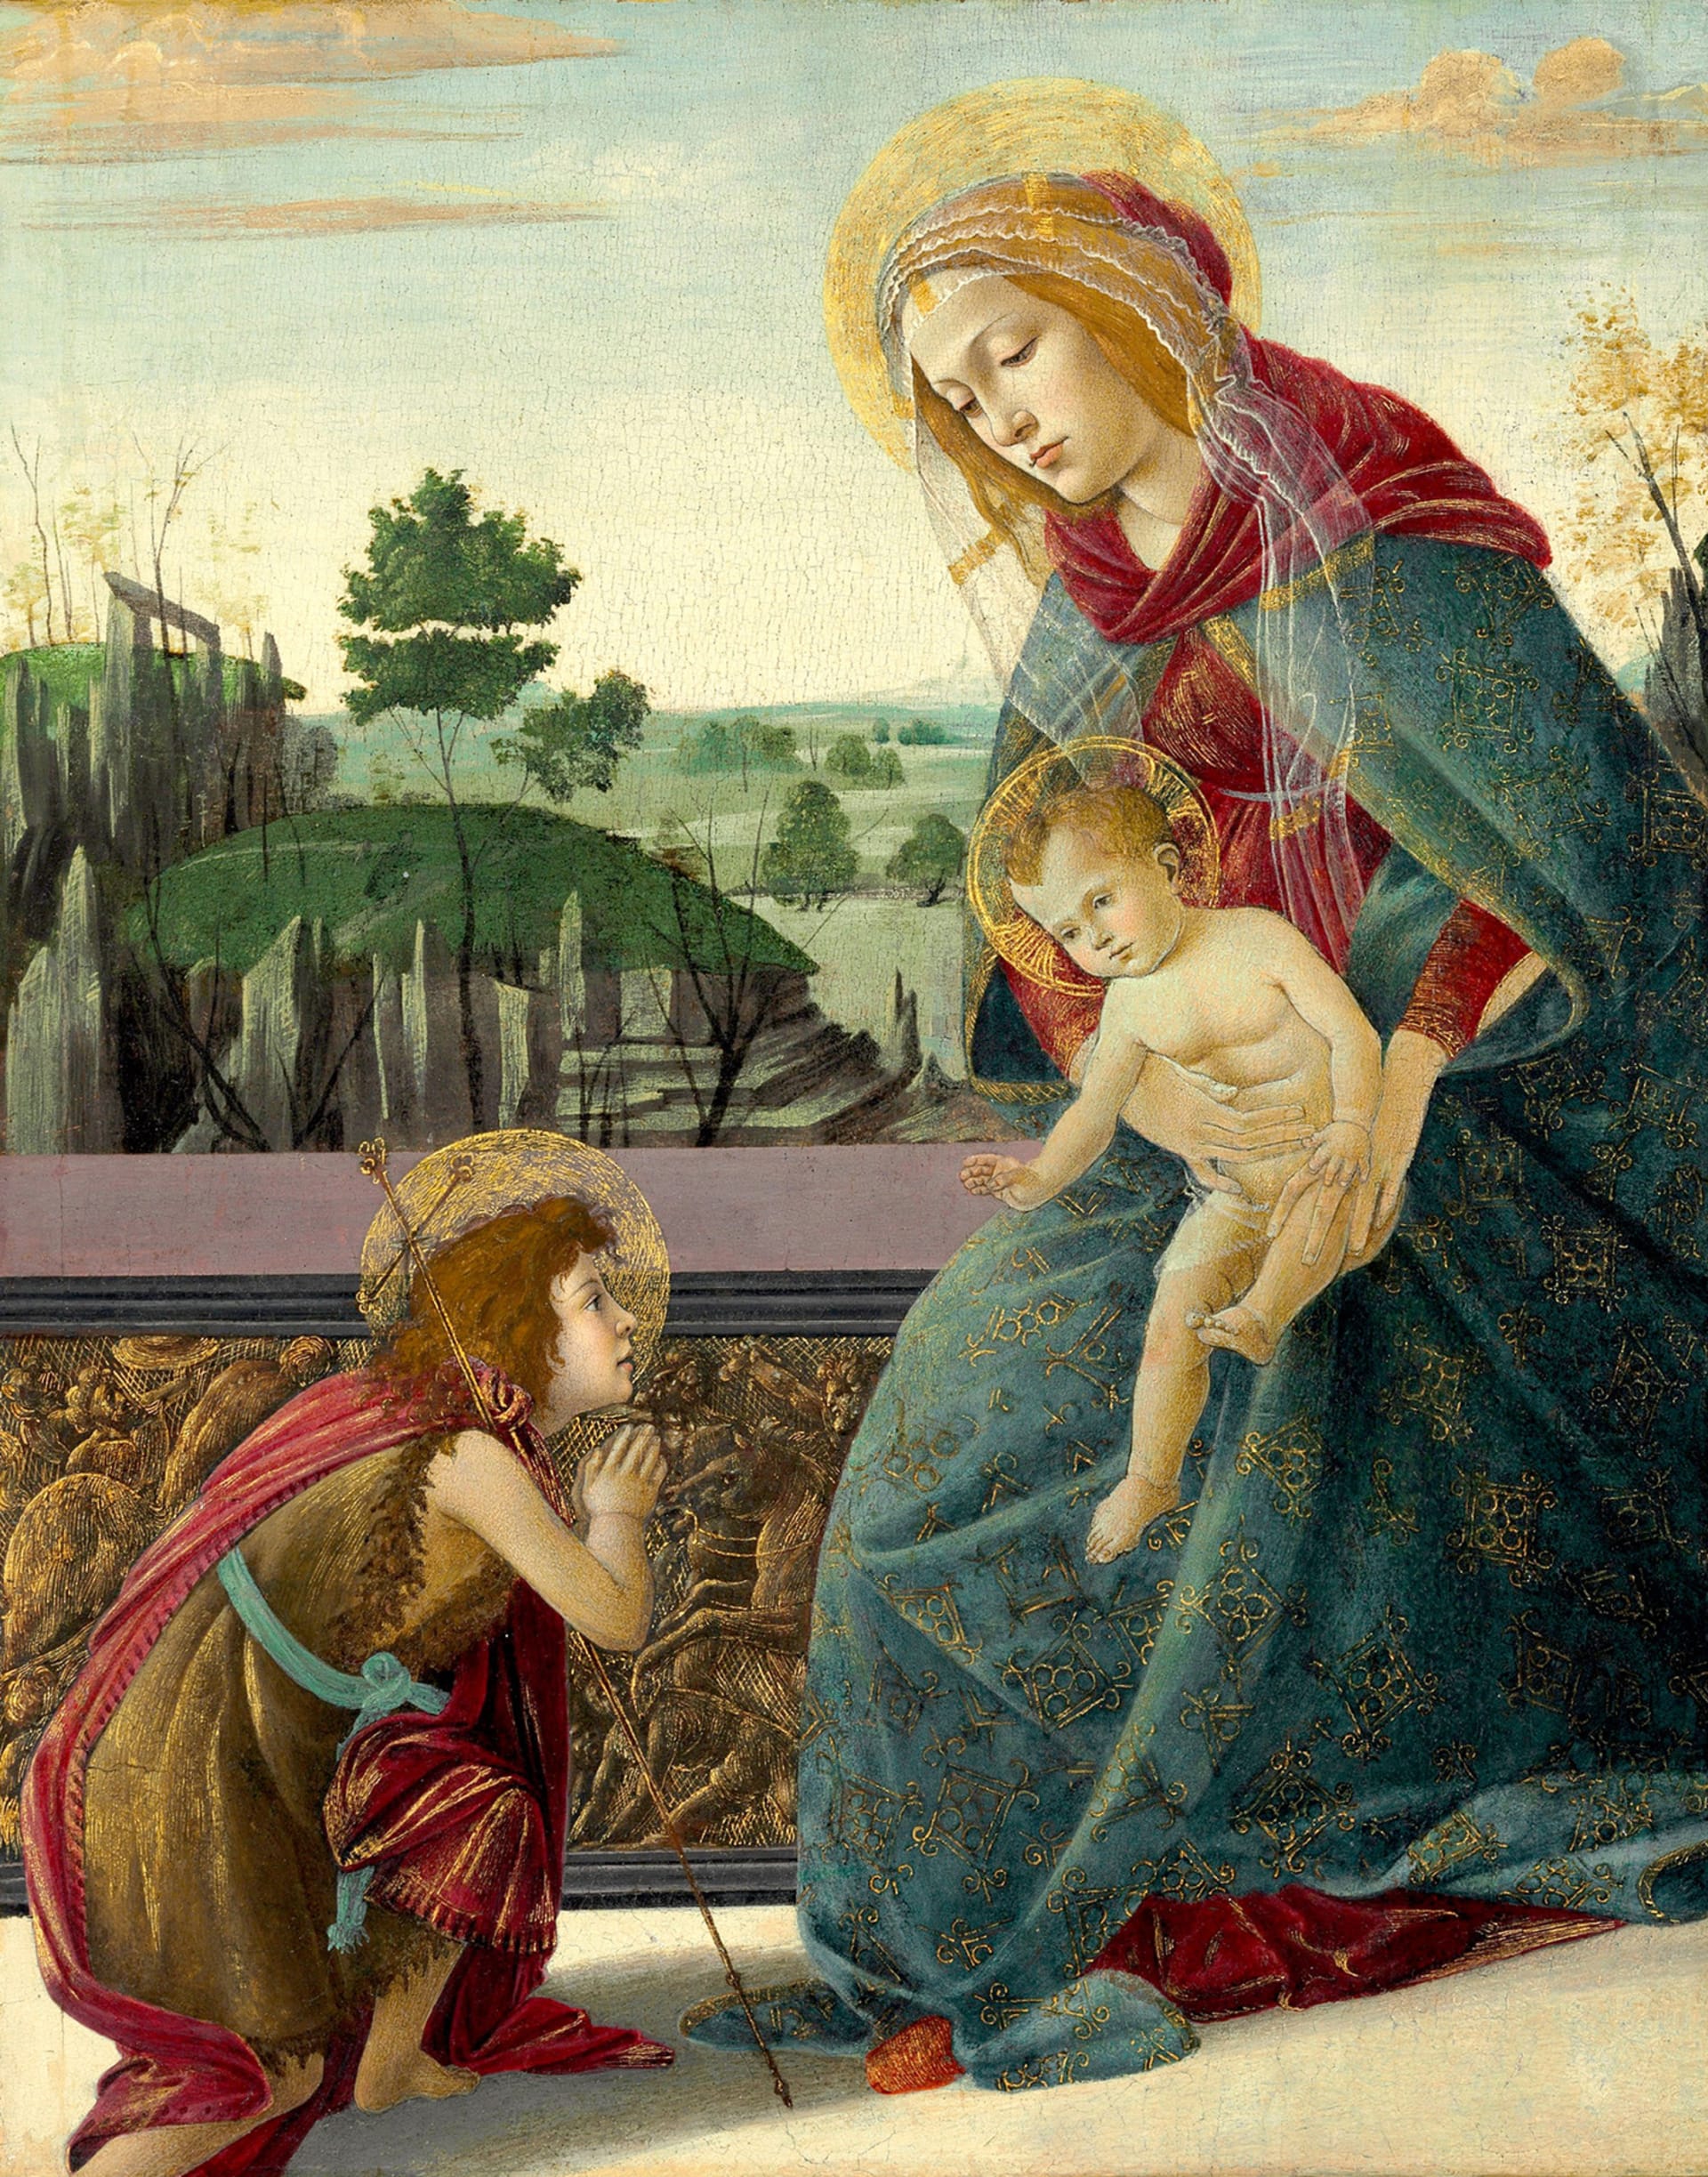 Dosud nejdražší vydražené dílo Sandra Botticelliho, obraz The Rockefeller Madonna, se prodalo za 10,4 milionu dolarů.